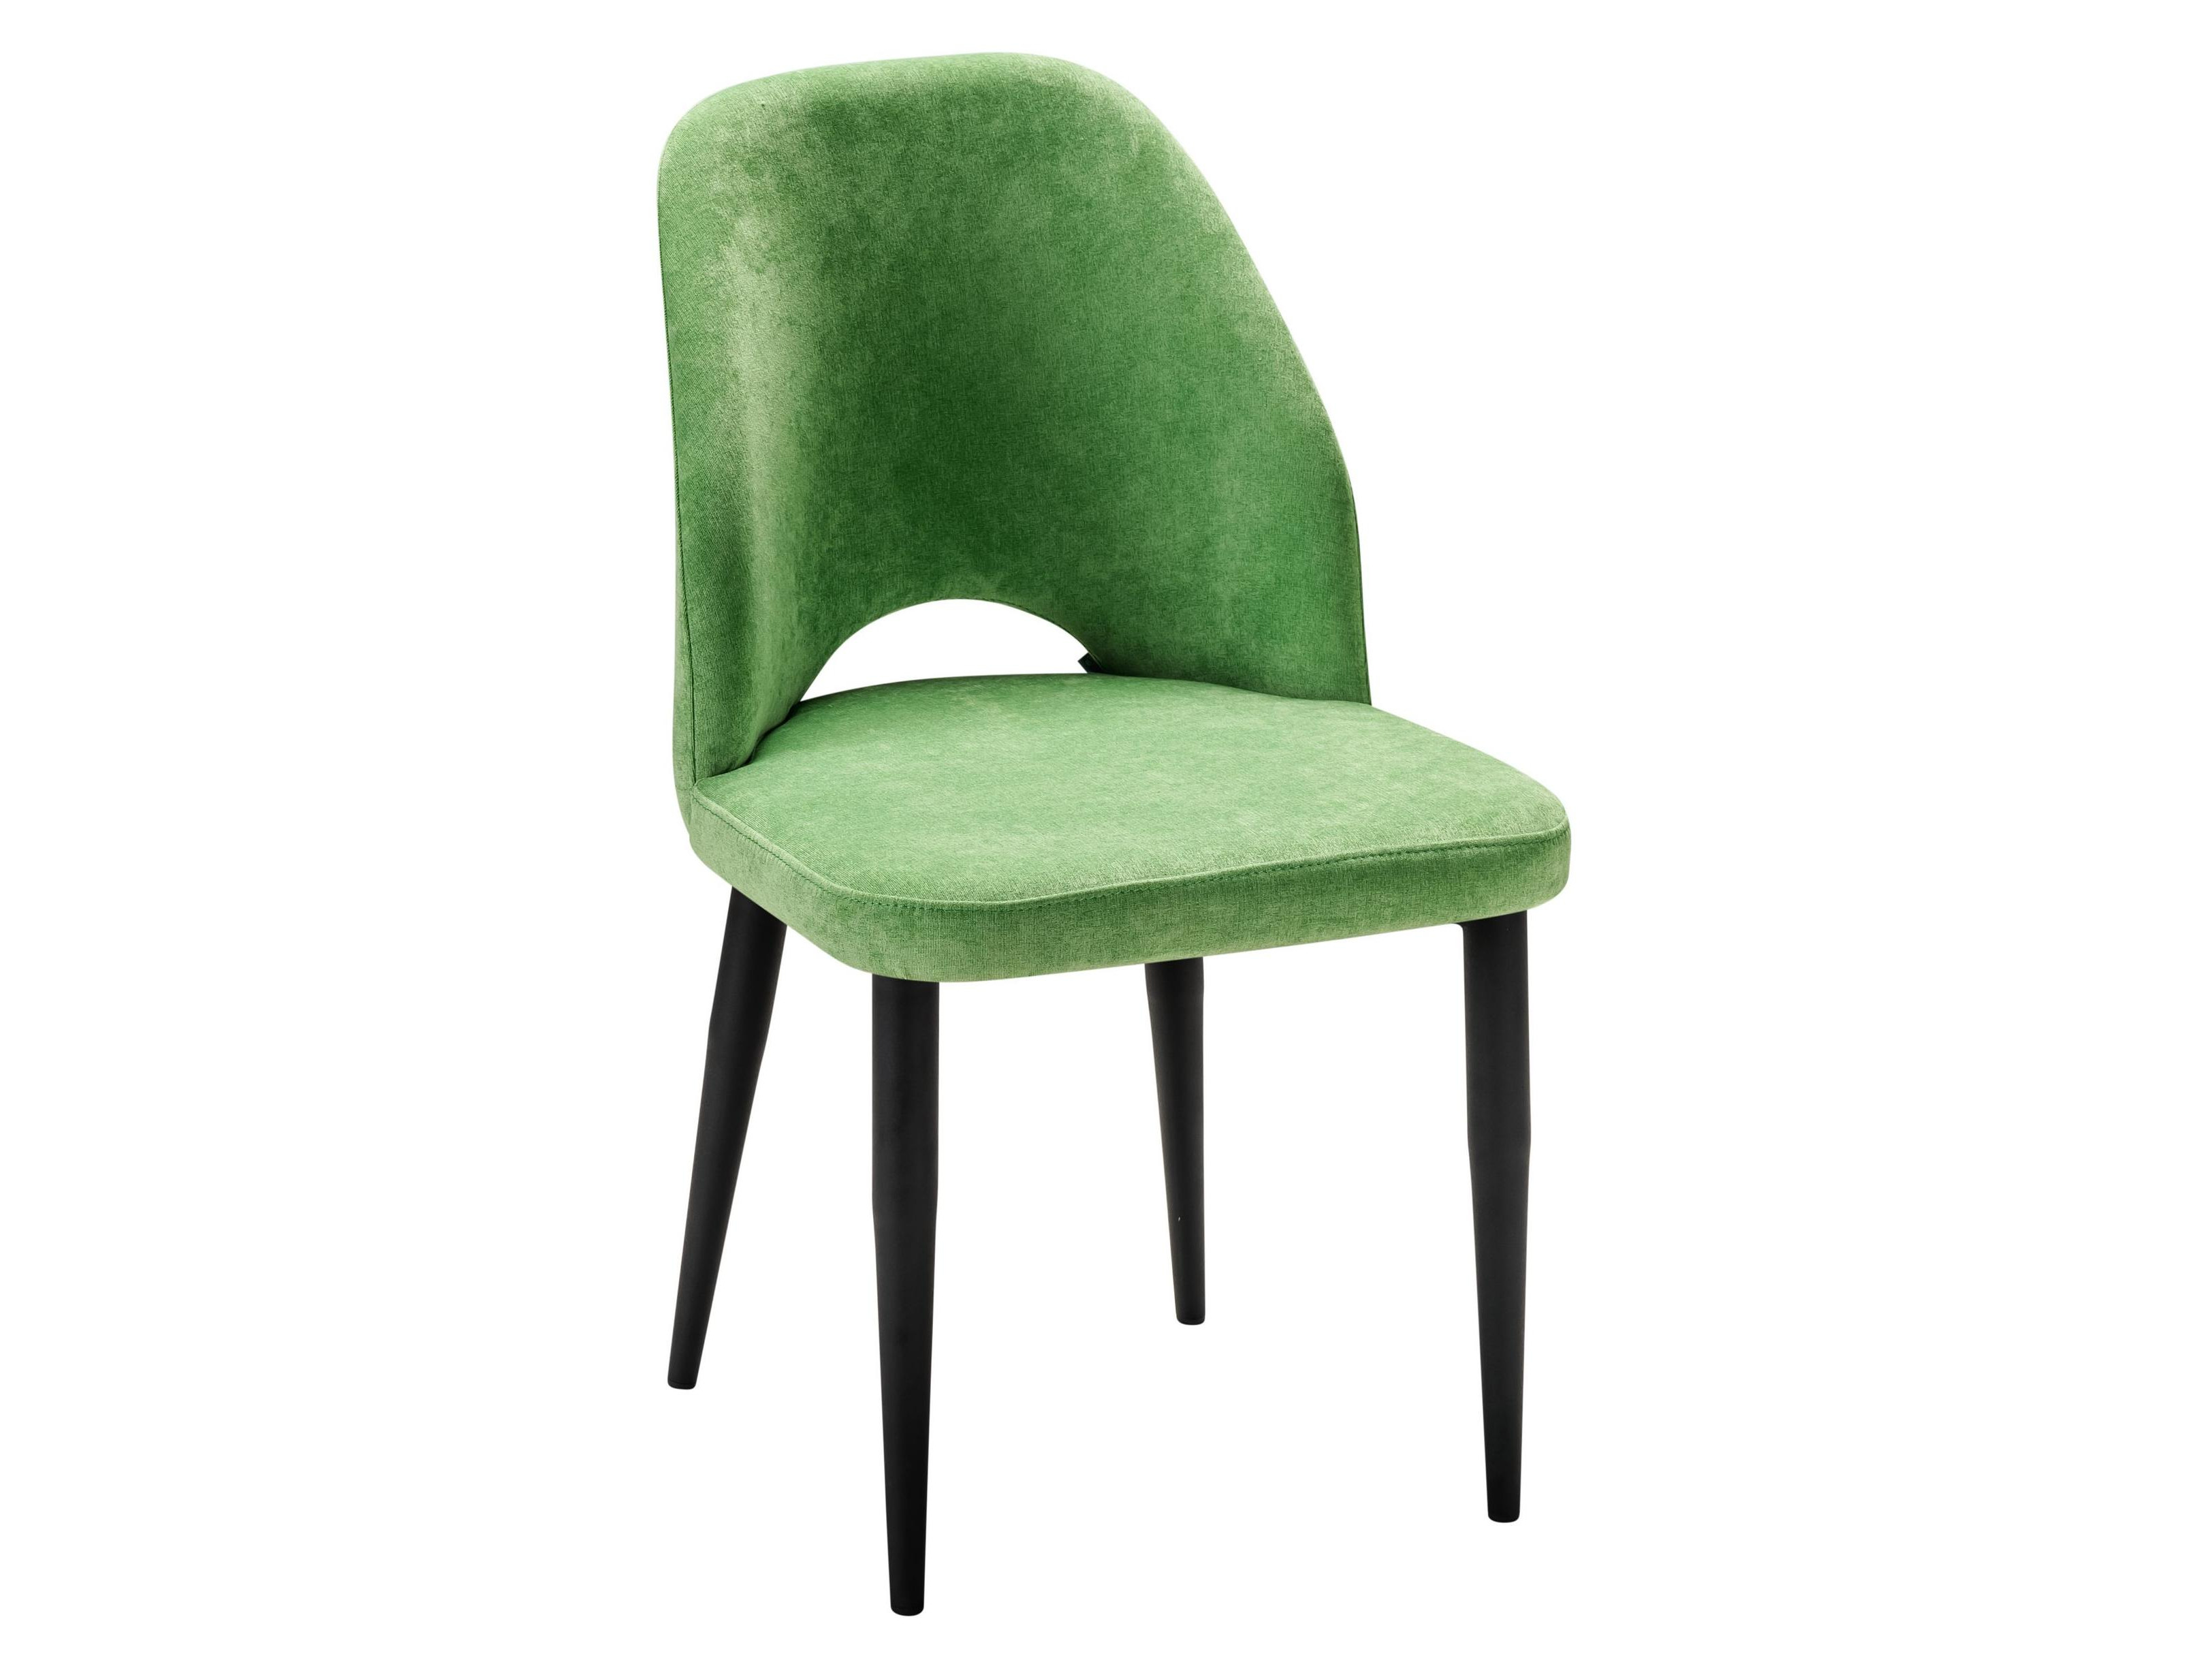 Стул Ledger зеленый/черный Зеленый, Металл стул ledger зеленый нат дуб зеленый металл